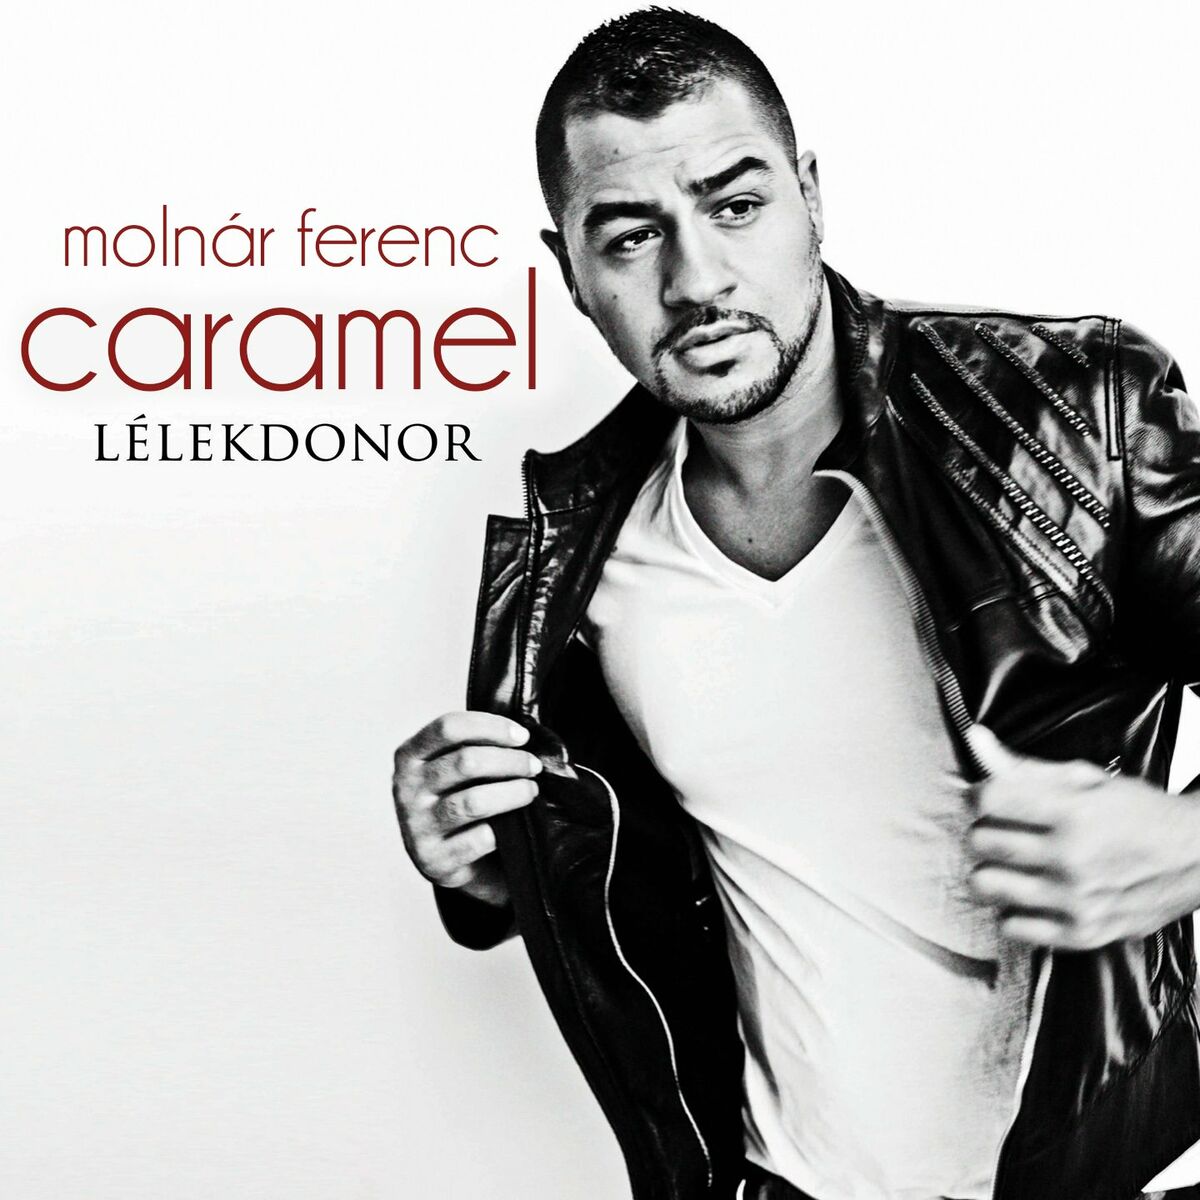 Molnár Ferenc Caramel - Jelenés: lyrics and songs | Deezer